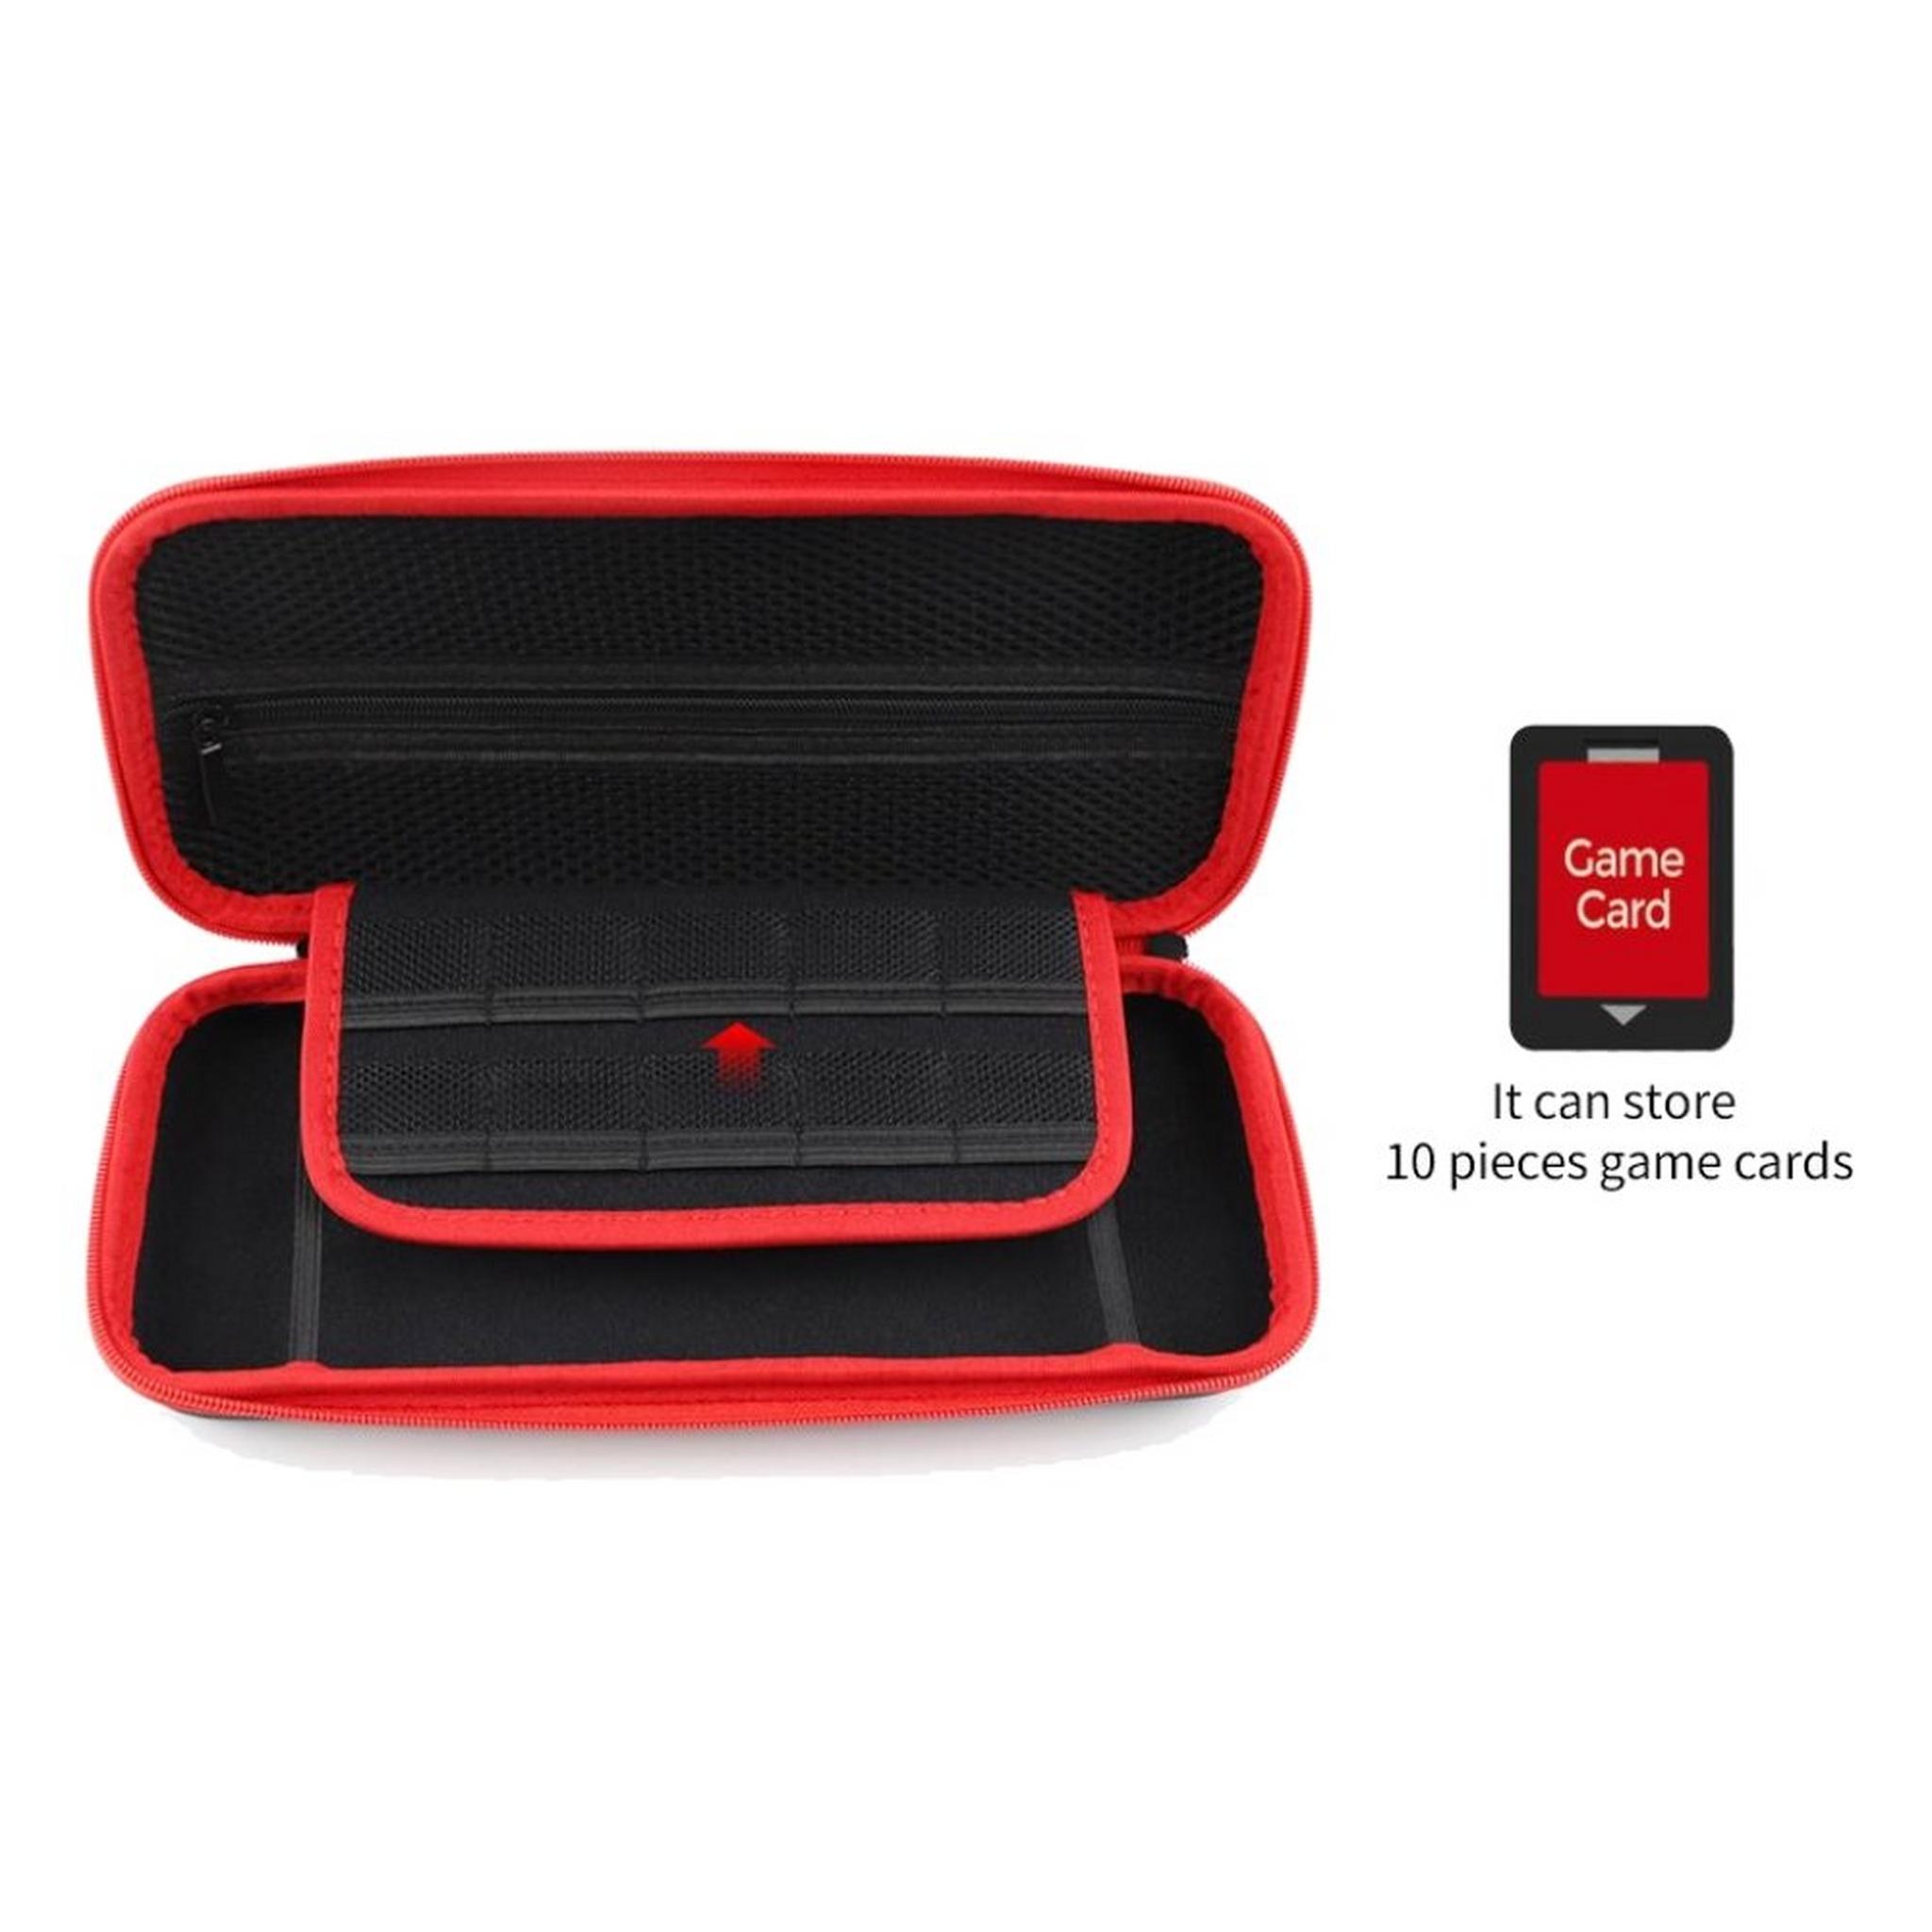 Dobe Nintendo Switch OLED Eva storage Case - TNS-1130